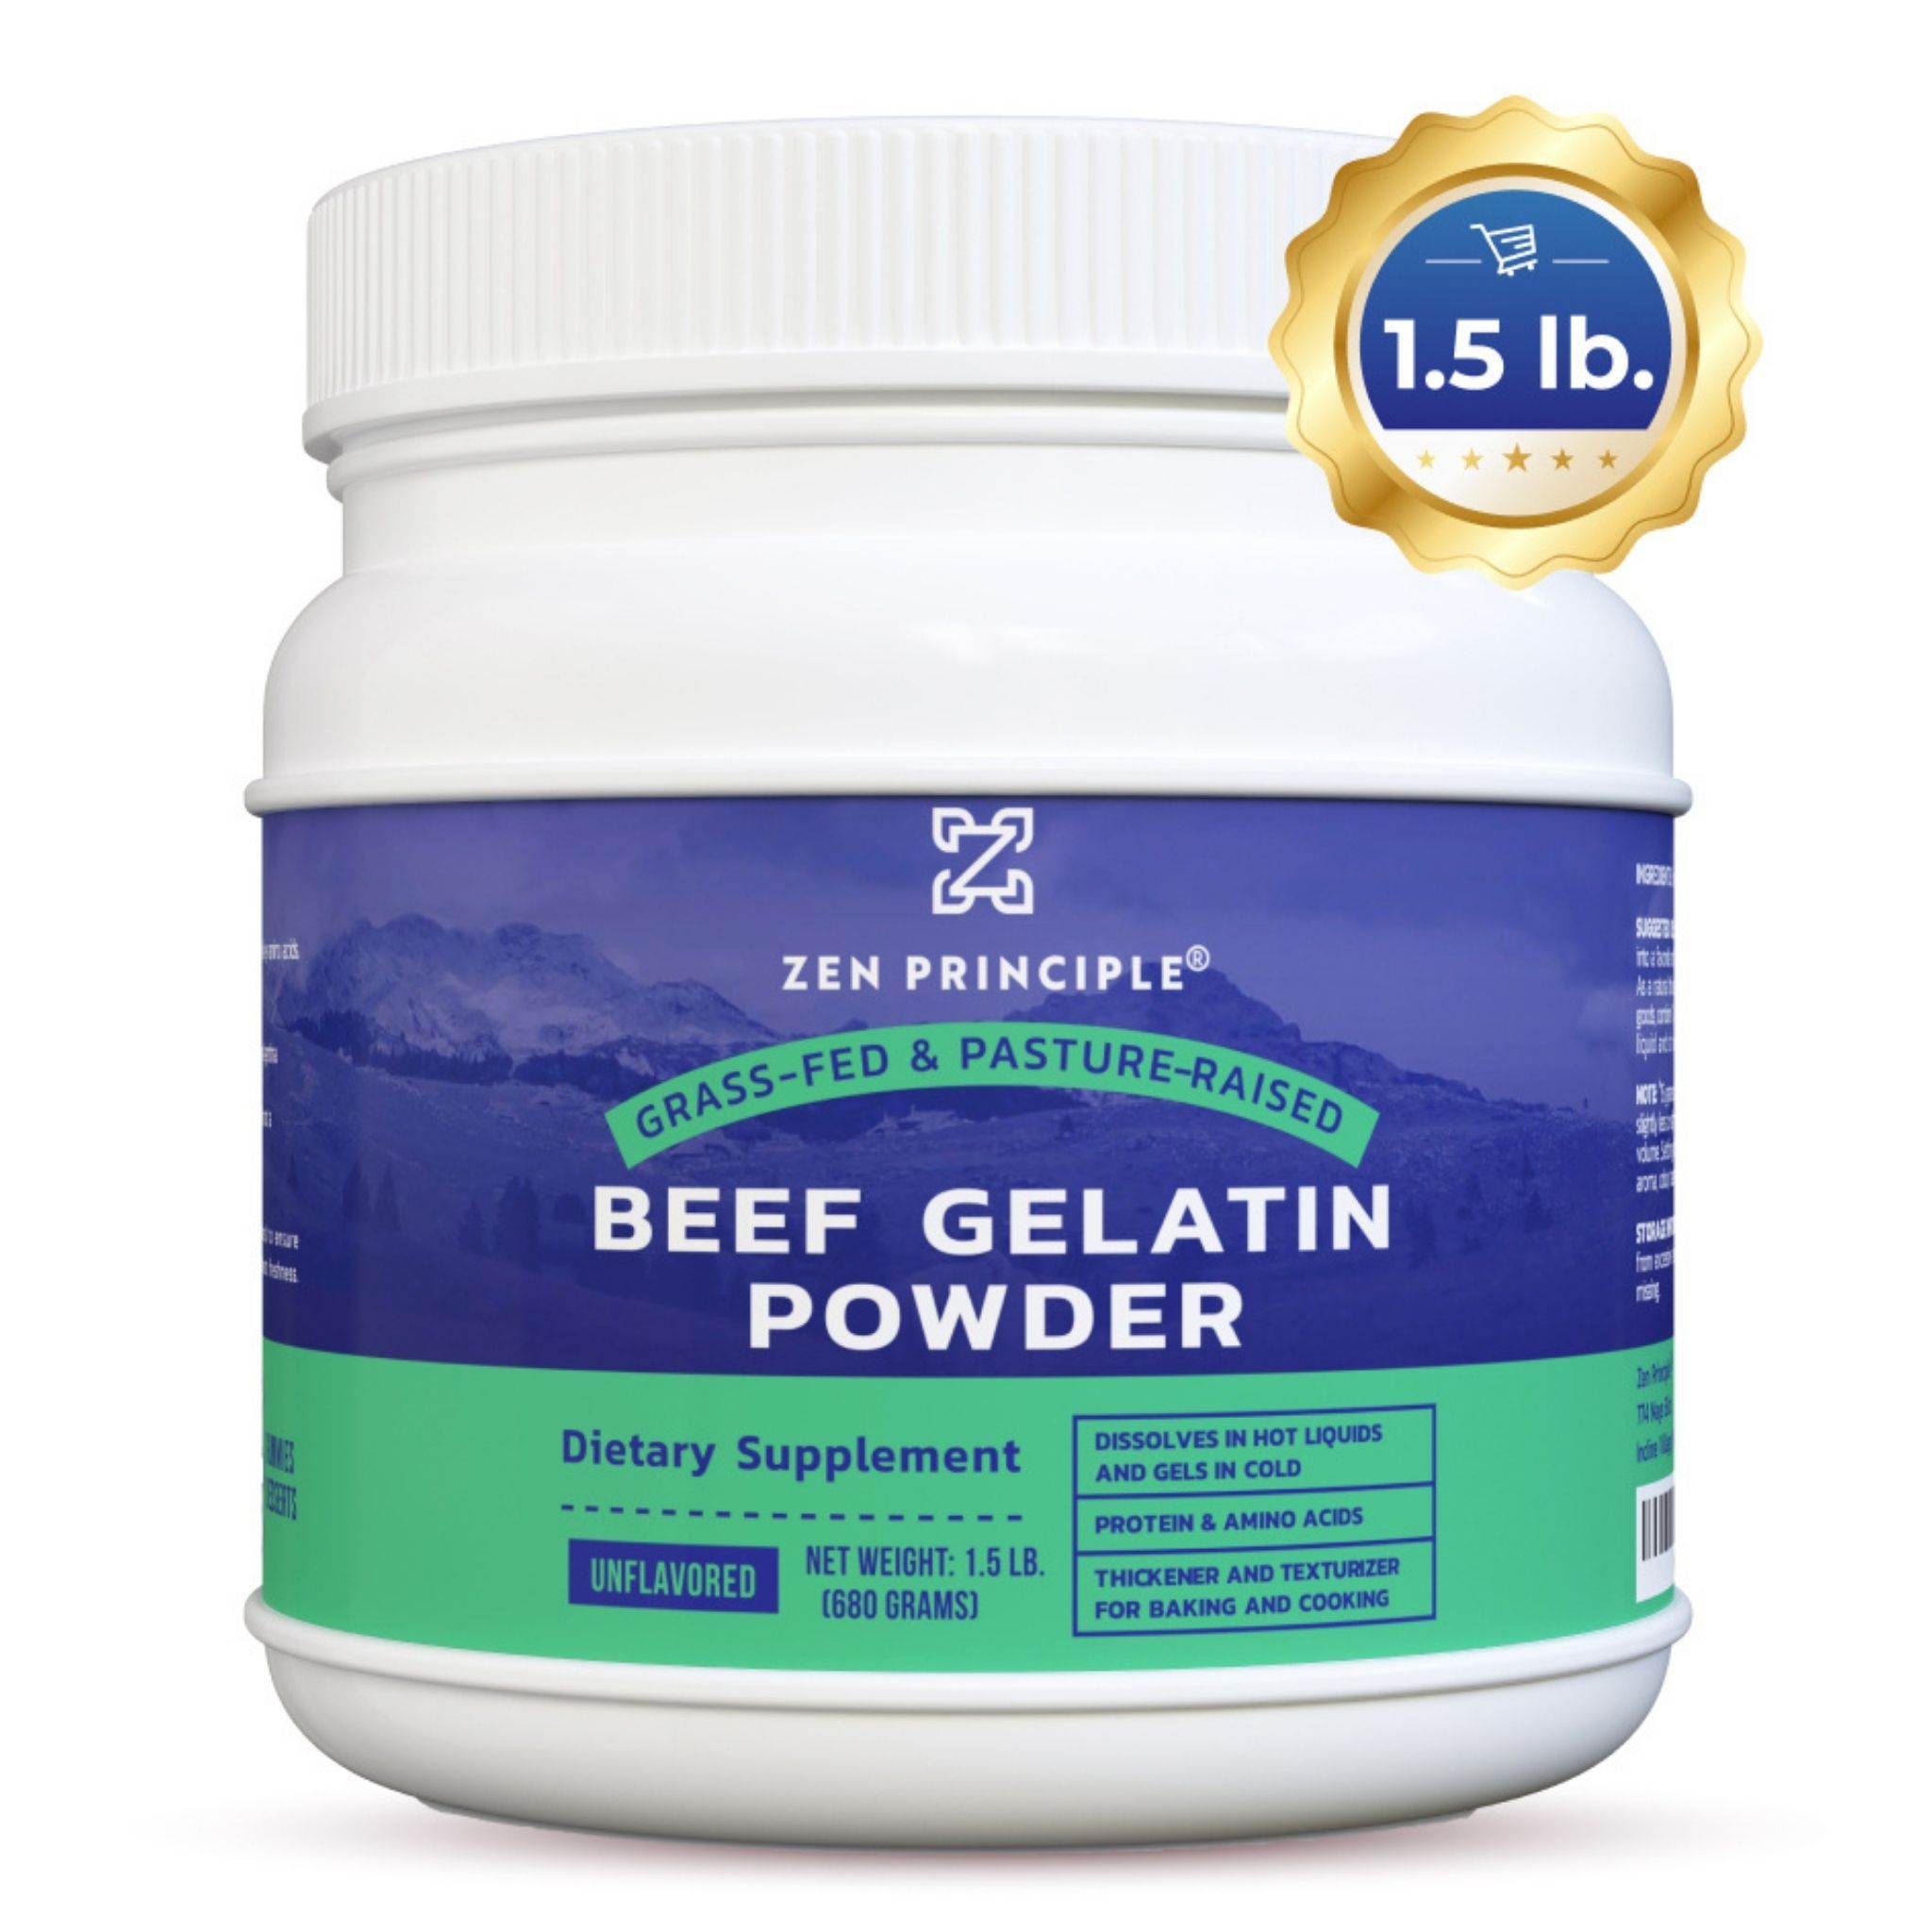 beef gelatin powder benefits